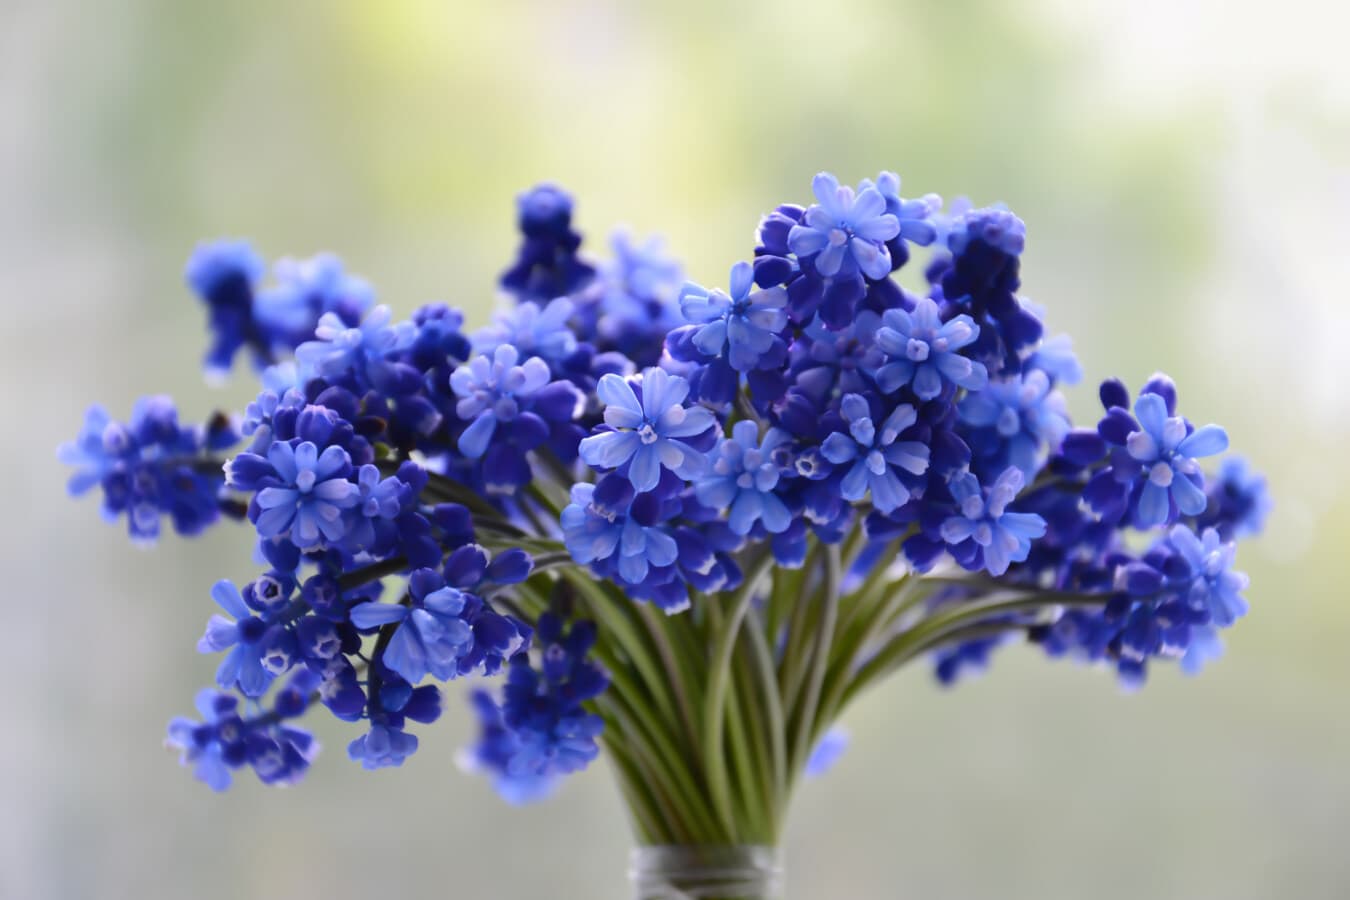 plava, cvijeće, divlji zumbul, buket, jednostavan, elegantan, vaza, minimalizam, botanika, parfem